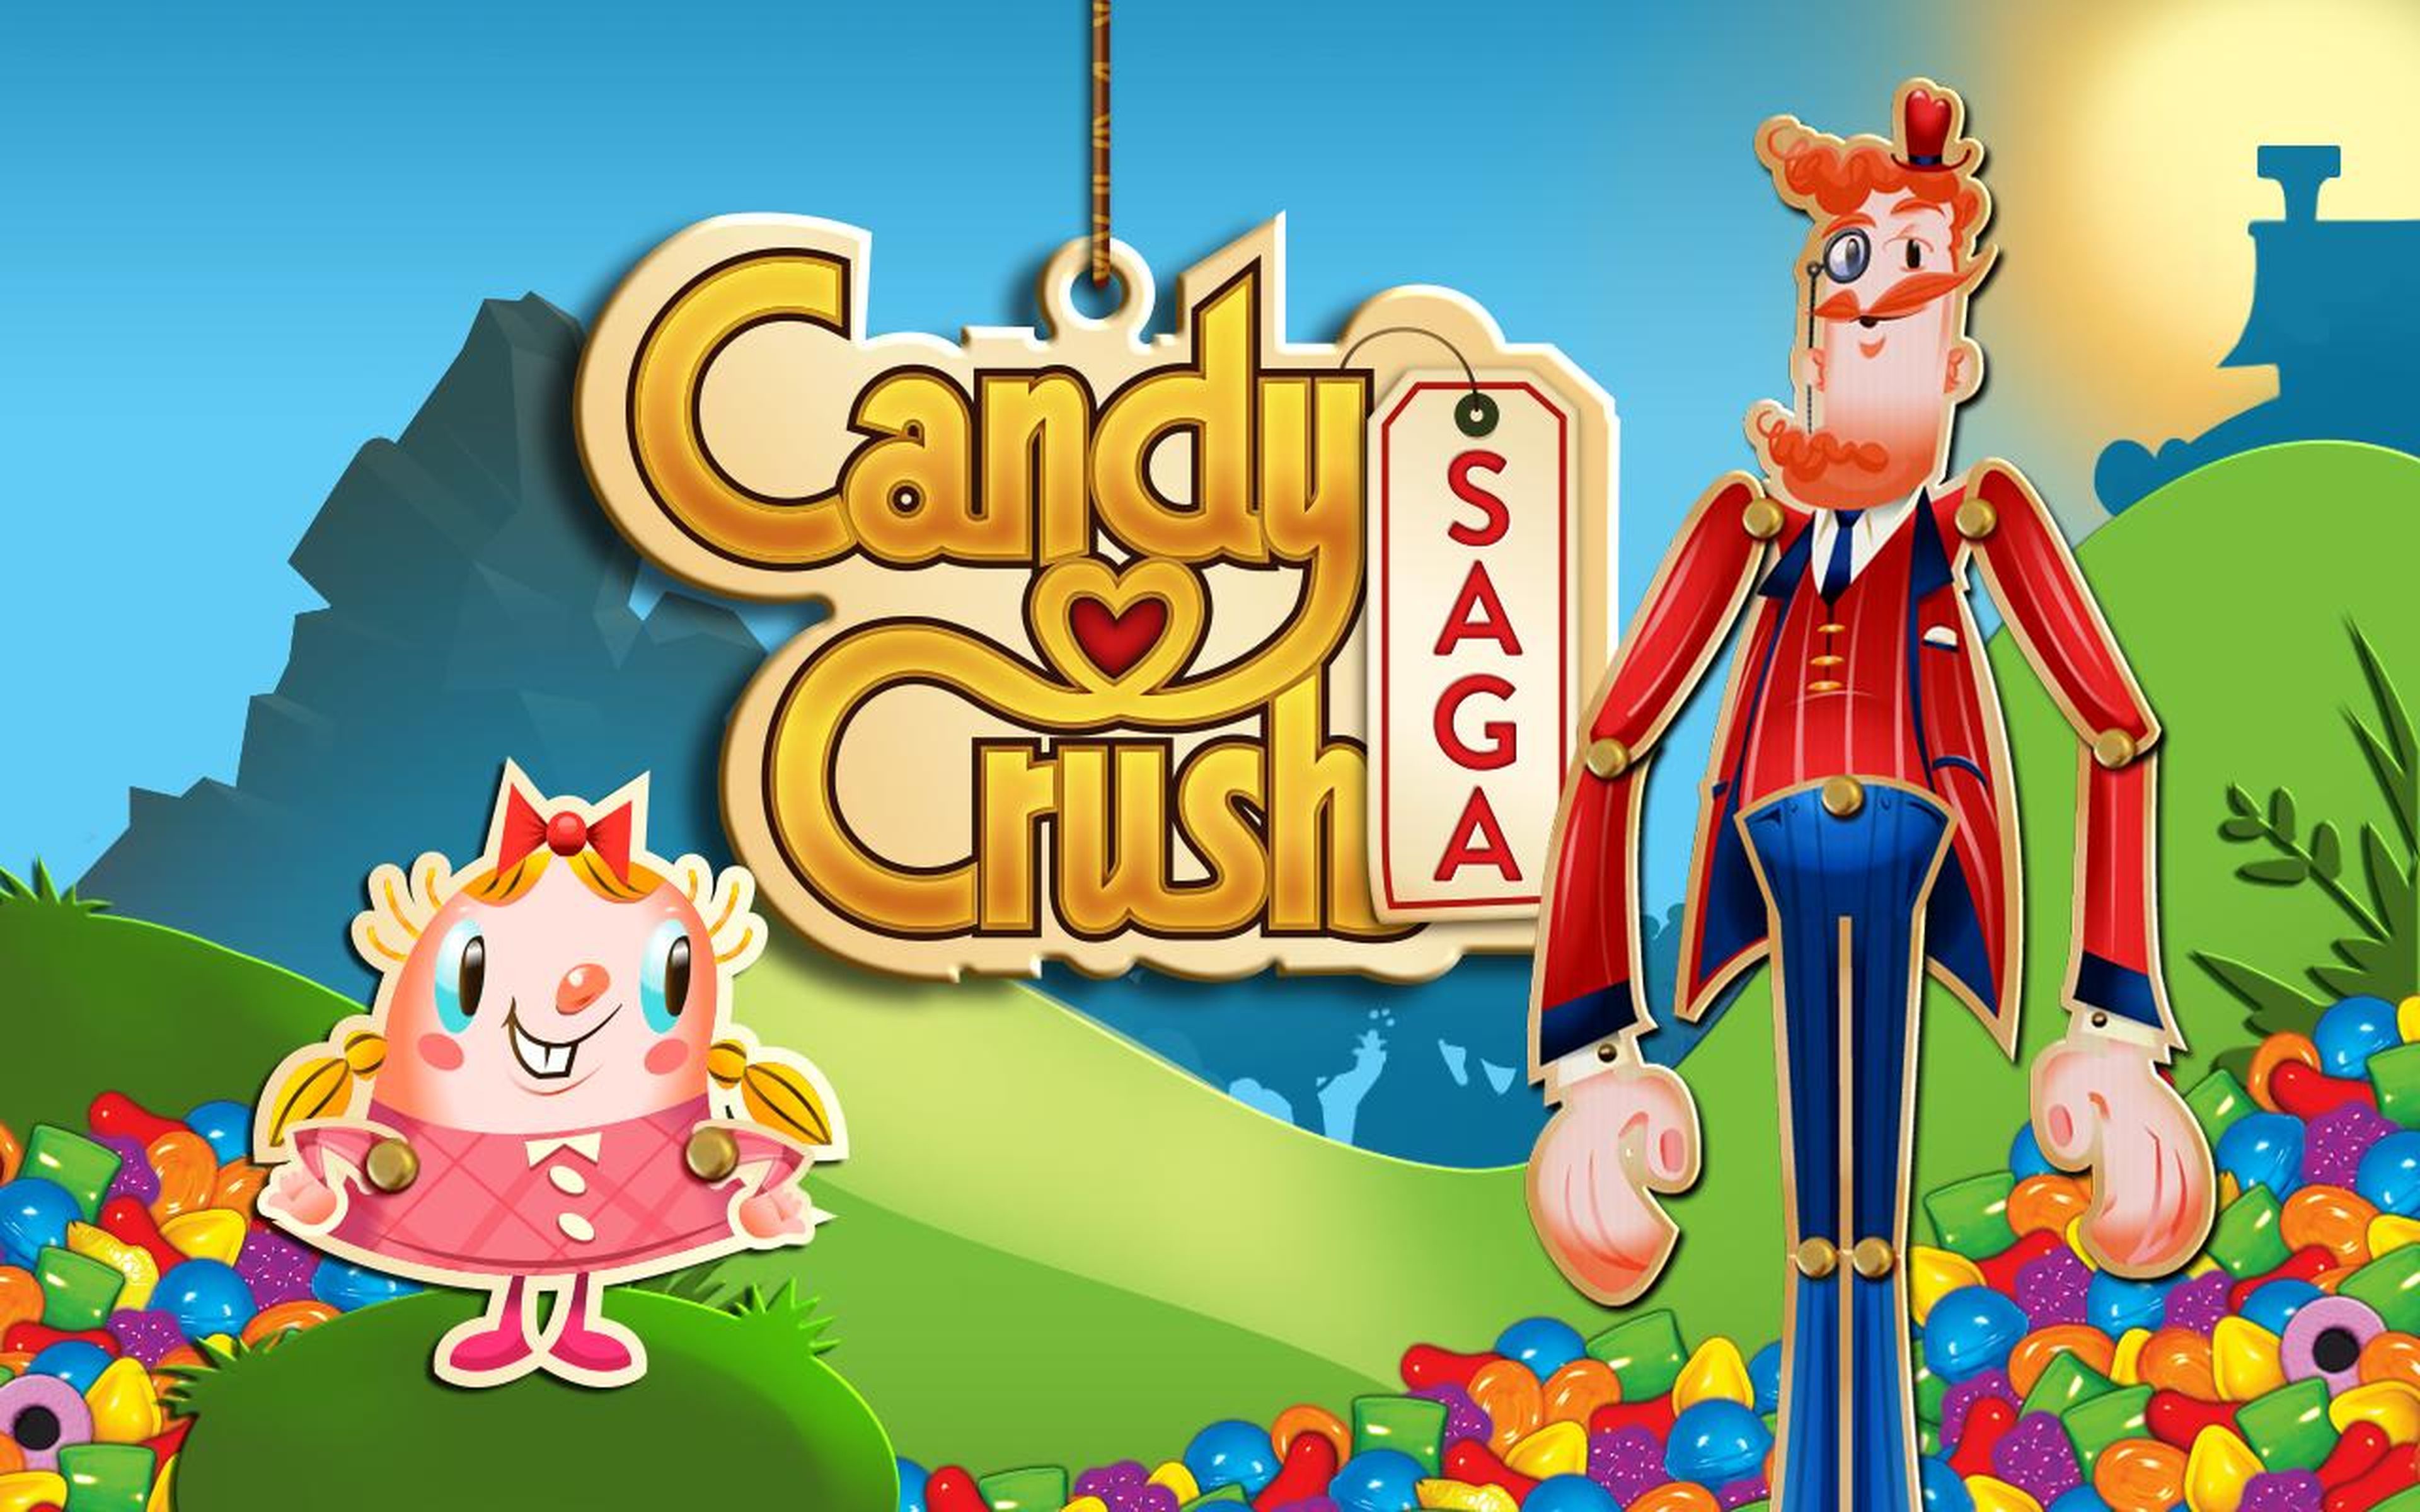 Los creadores de Candy Crush registran la palabra "Candy"